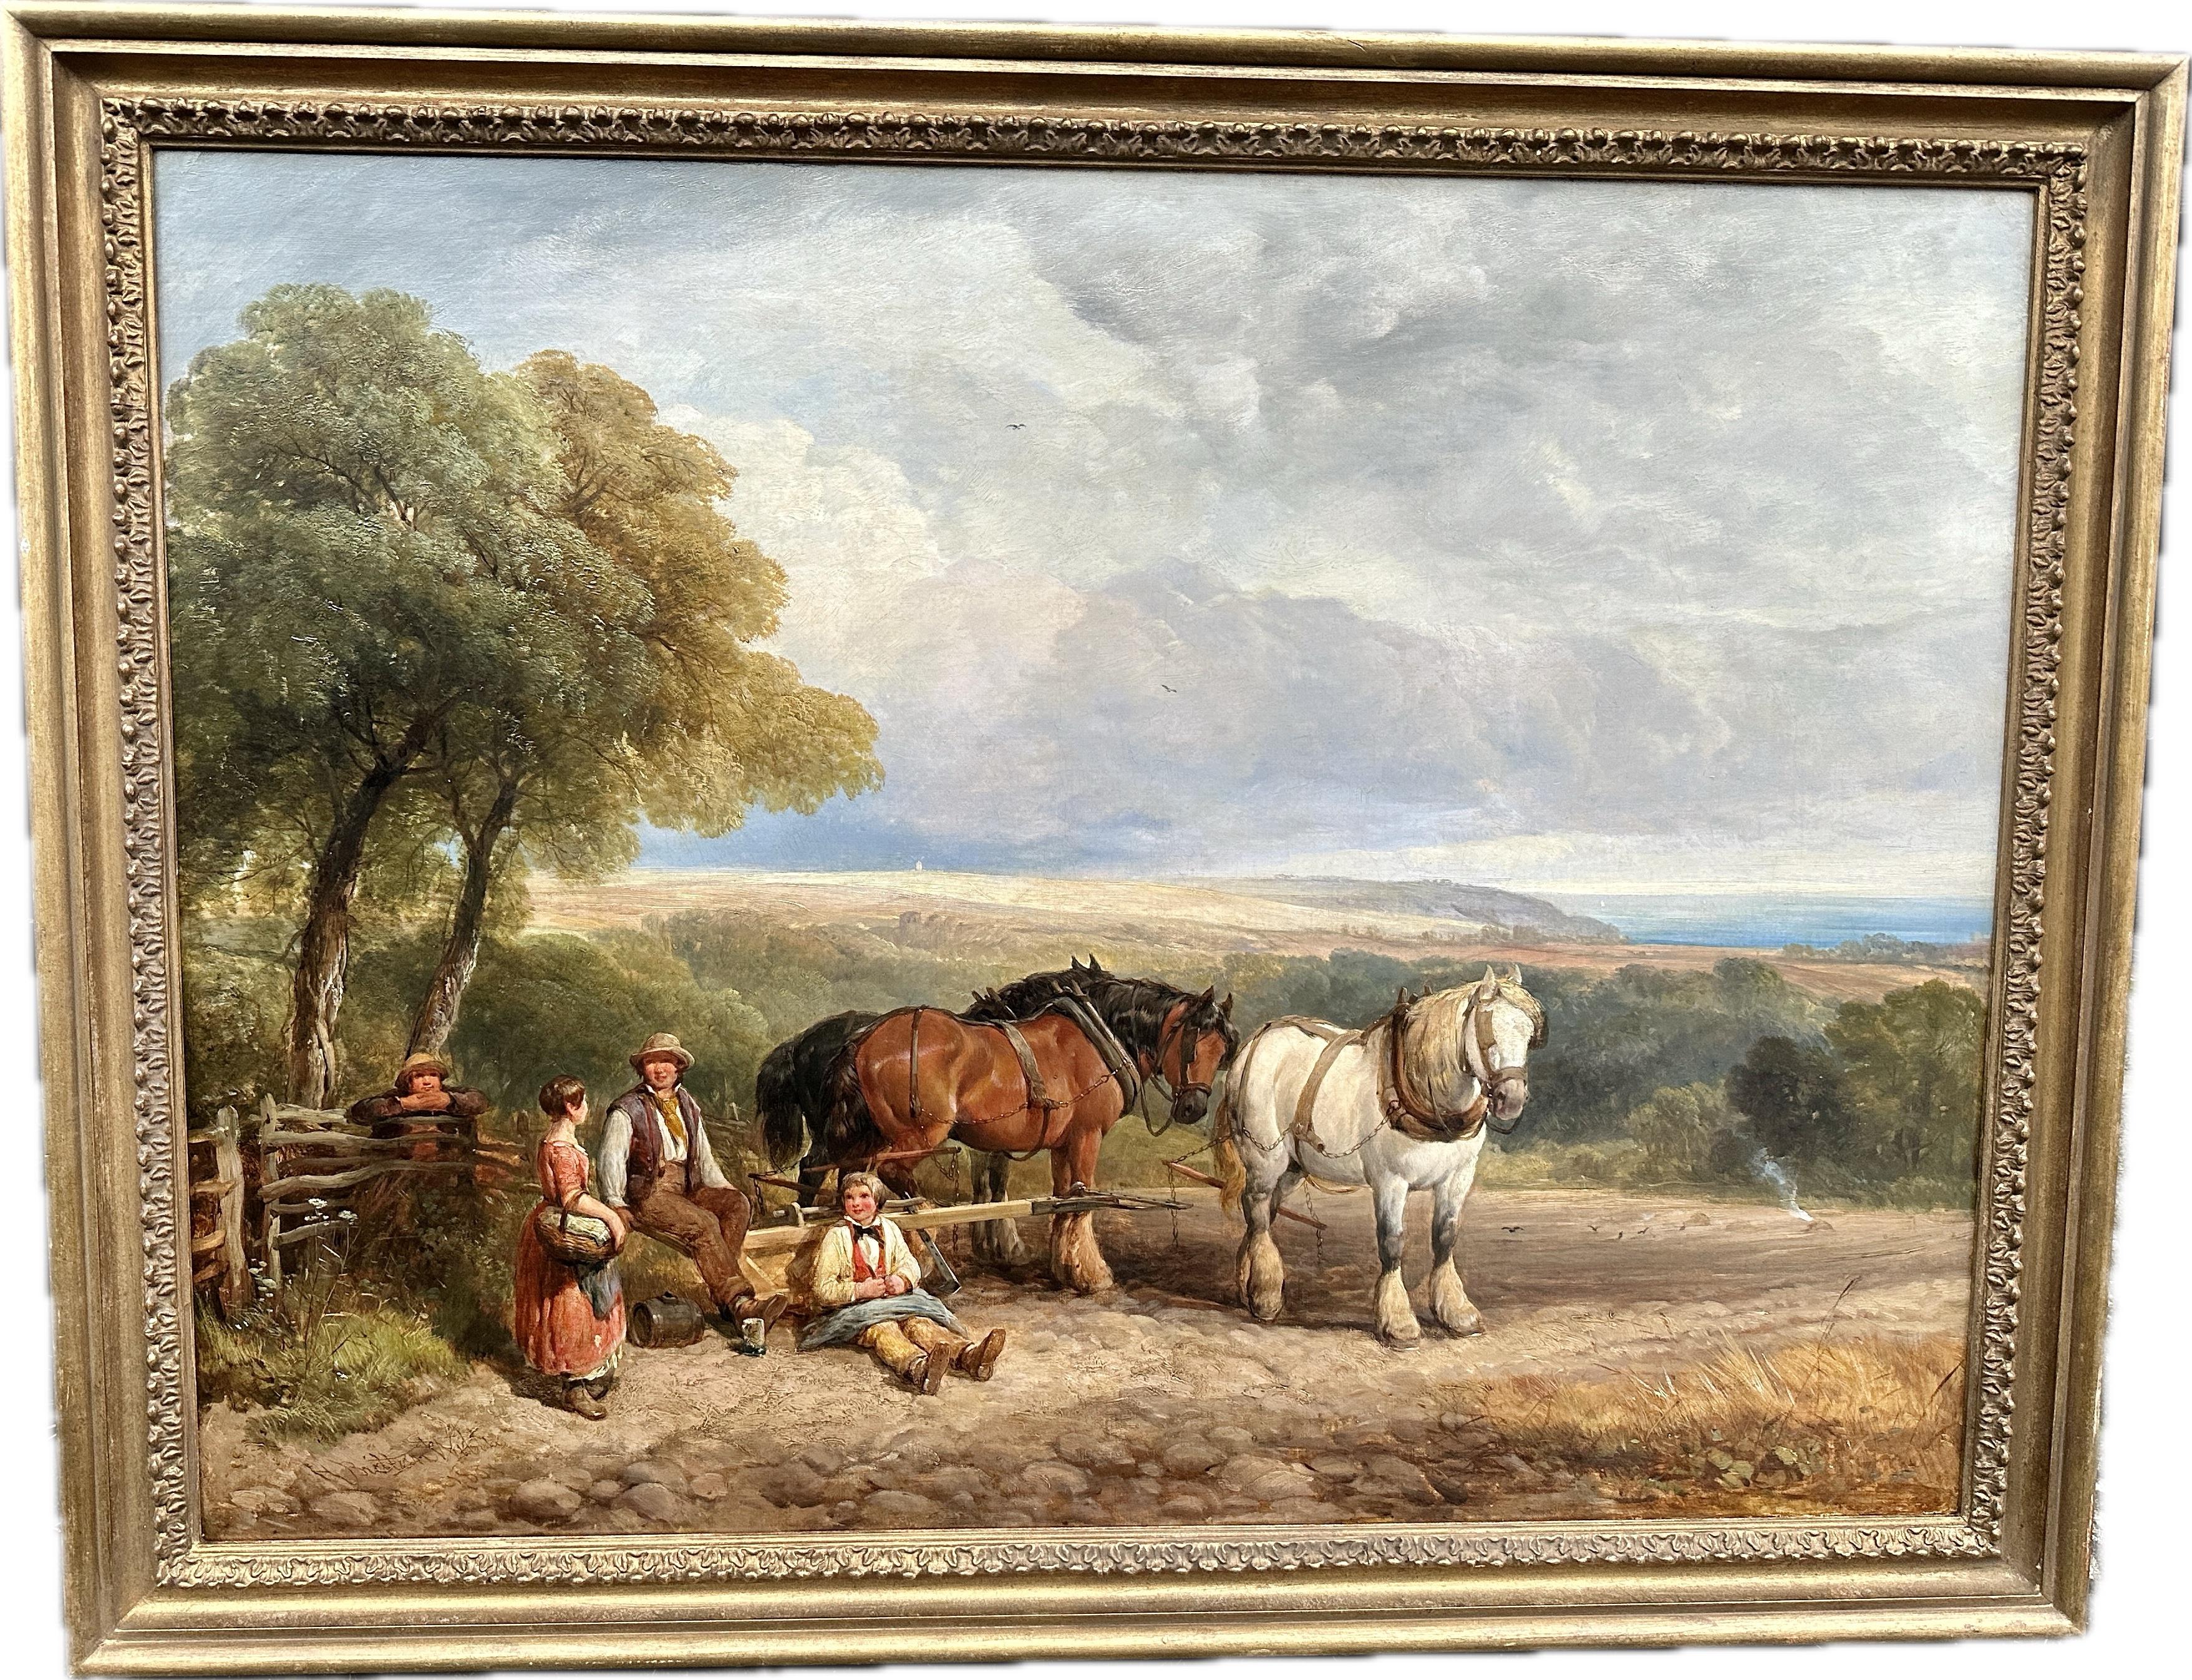 Landscape Painting Henry Brittan Willis - Paysage de moisson anglais du 19e siècle avec chevaux, fermiers, enfants, famille